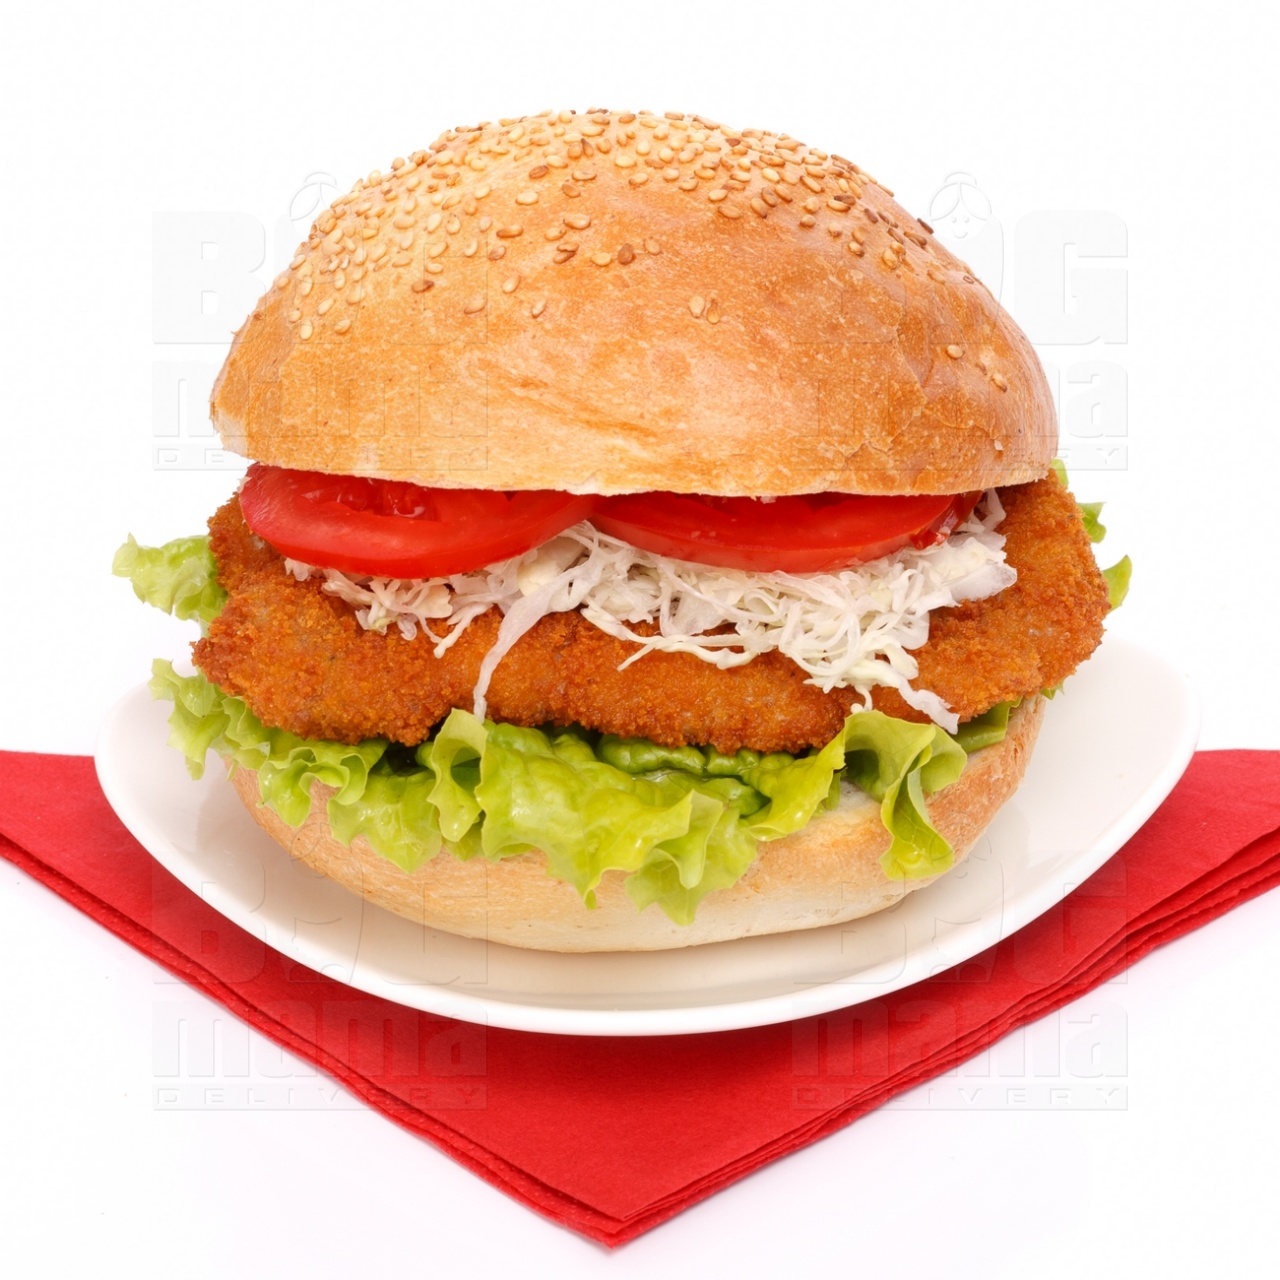 Product #57 image - Rántott sertéshúsos szendvics